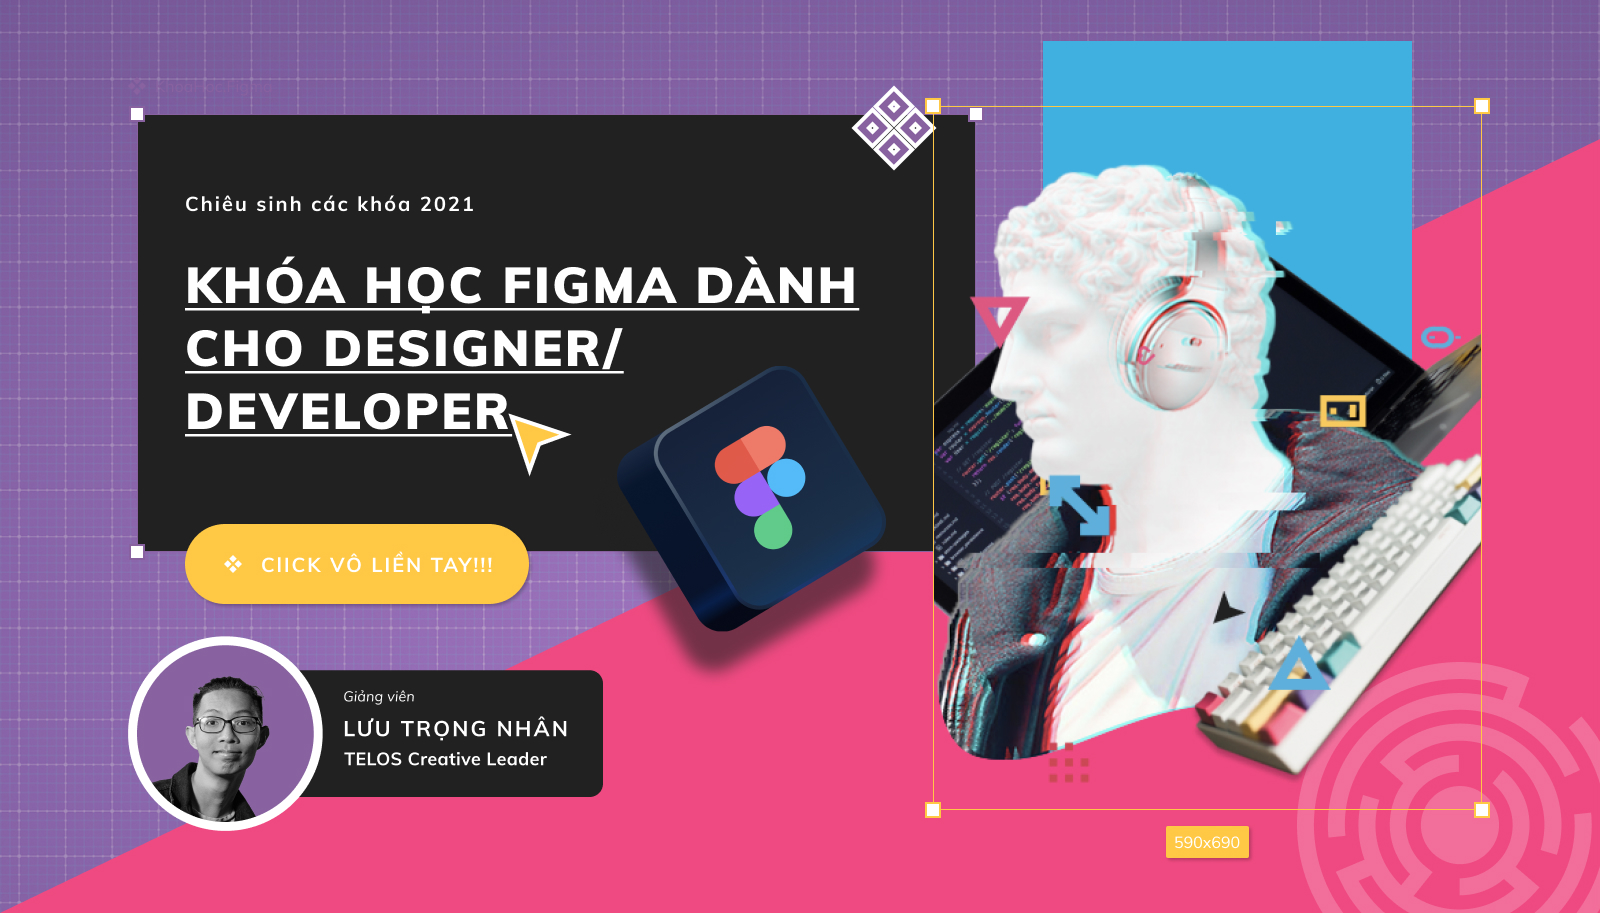 share khoa hoc Figma danh cho Designer Developer di dau xu huong Telos